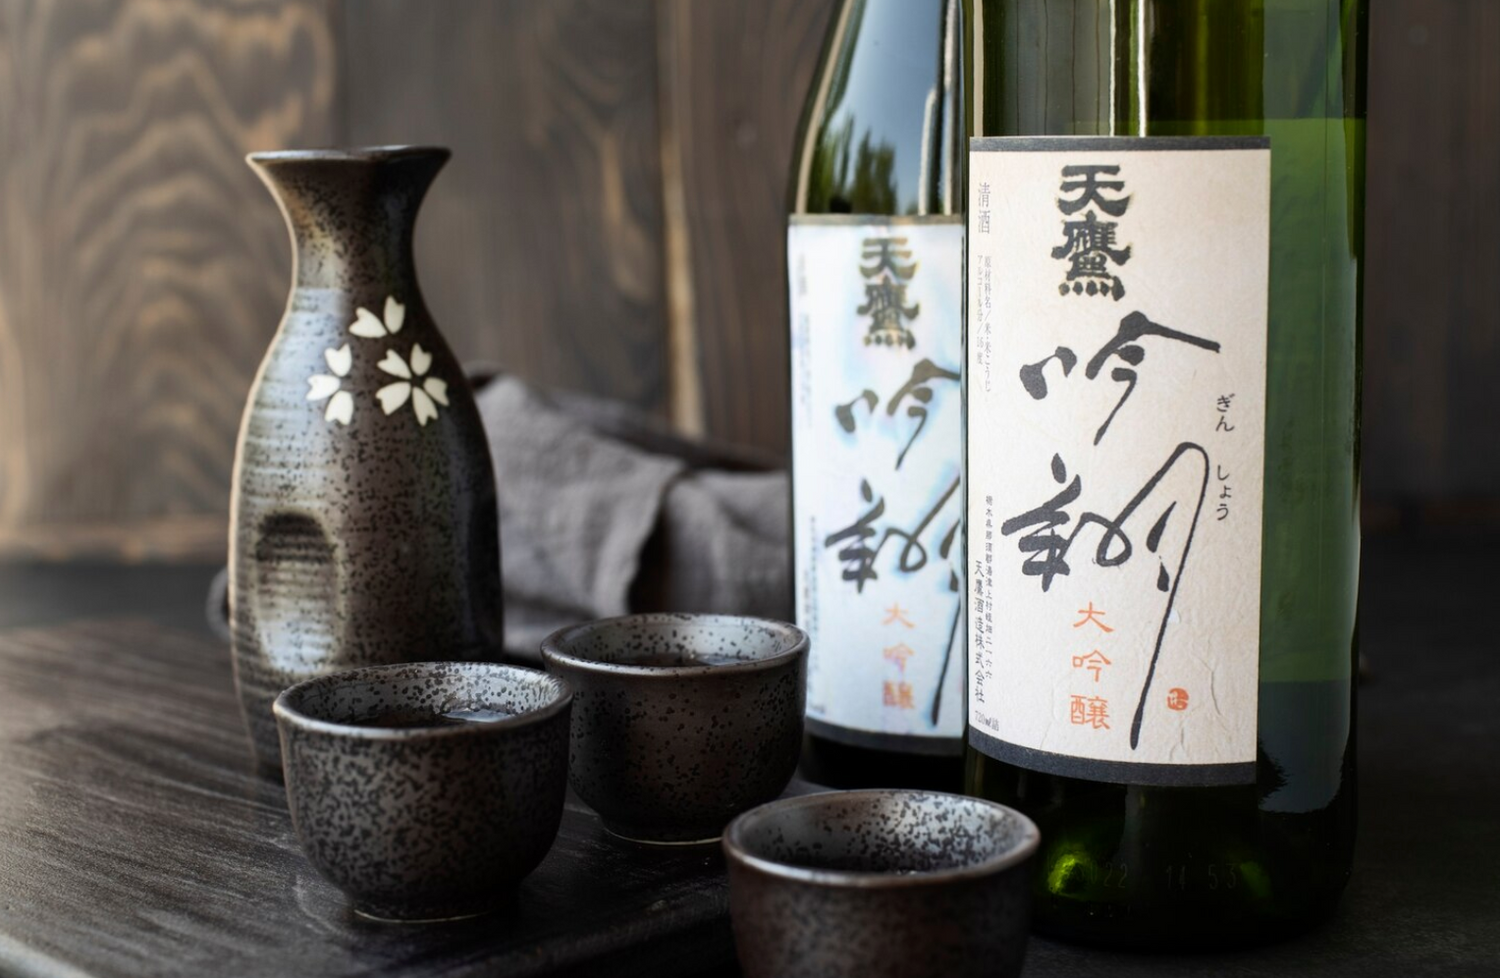 Sake bottles and dark cups